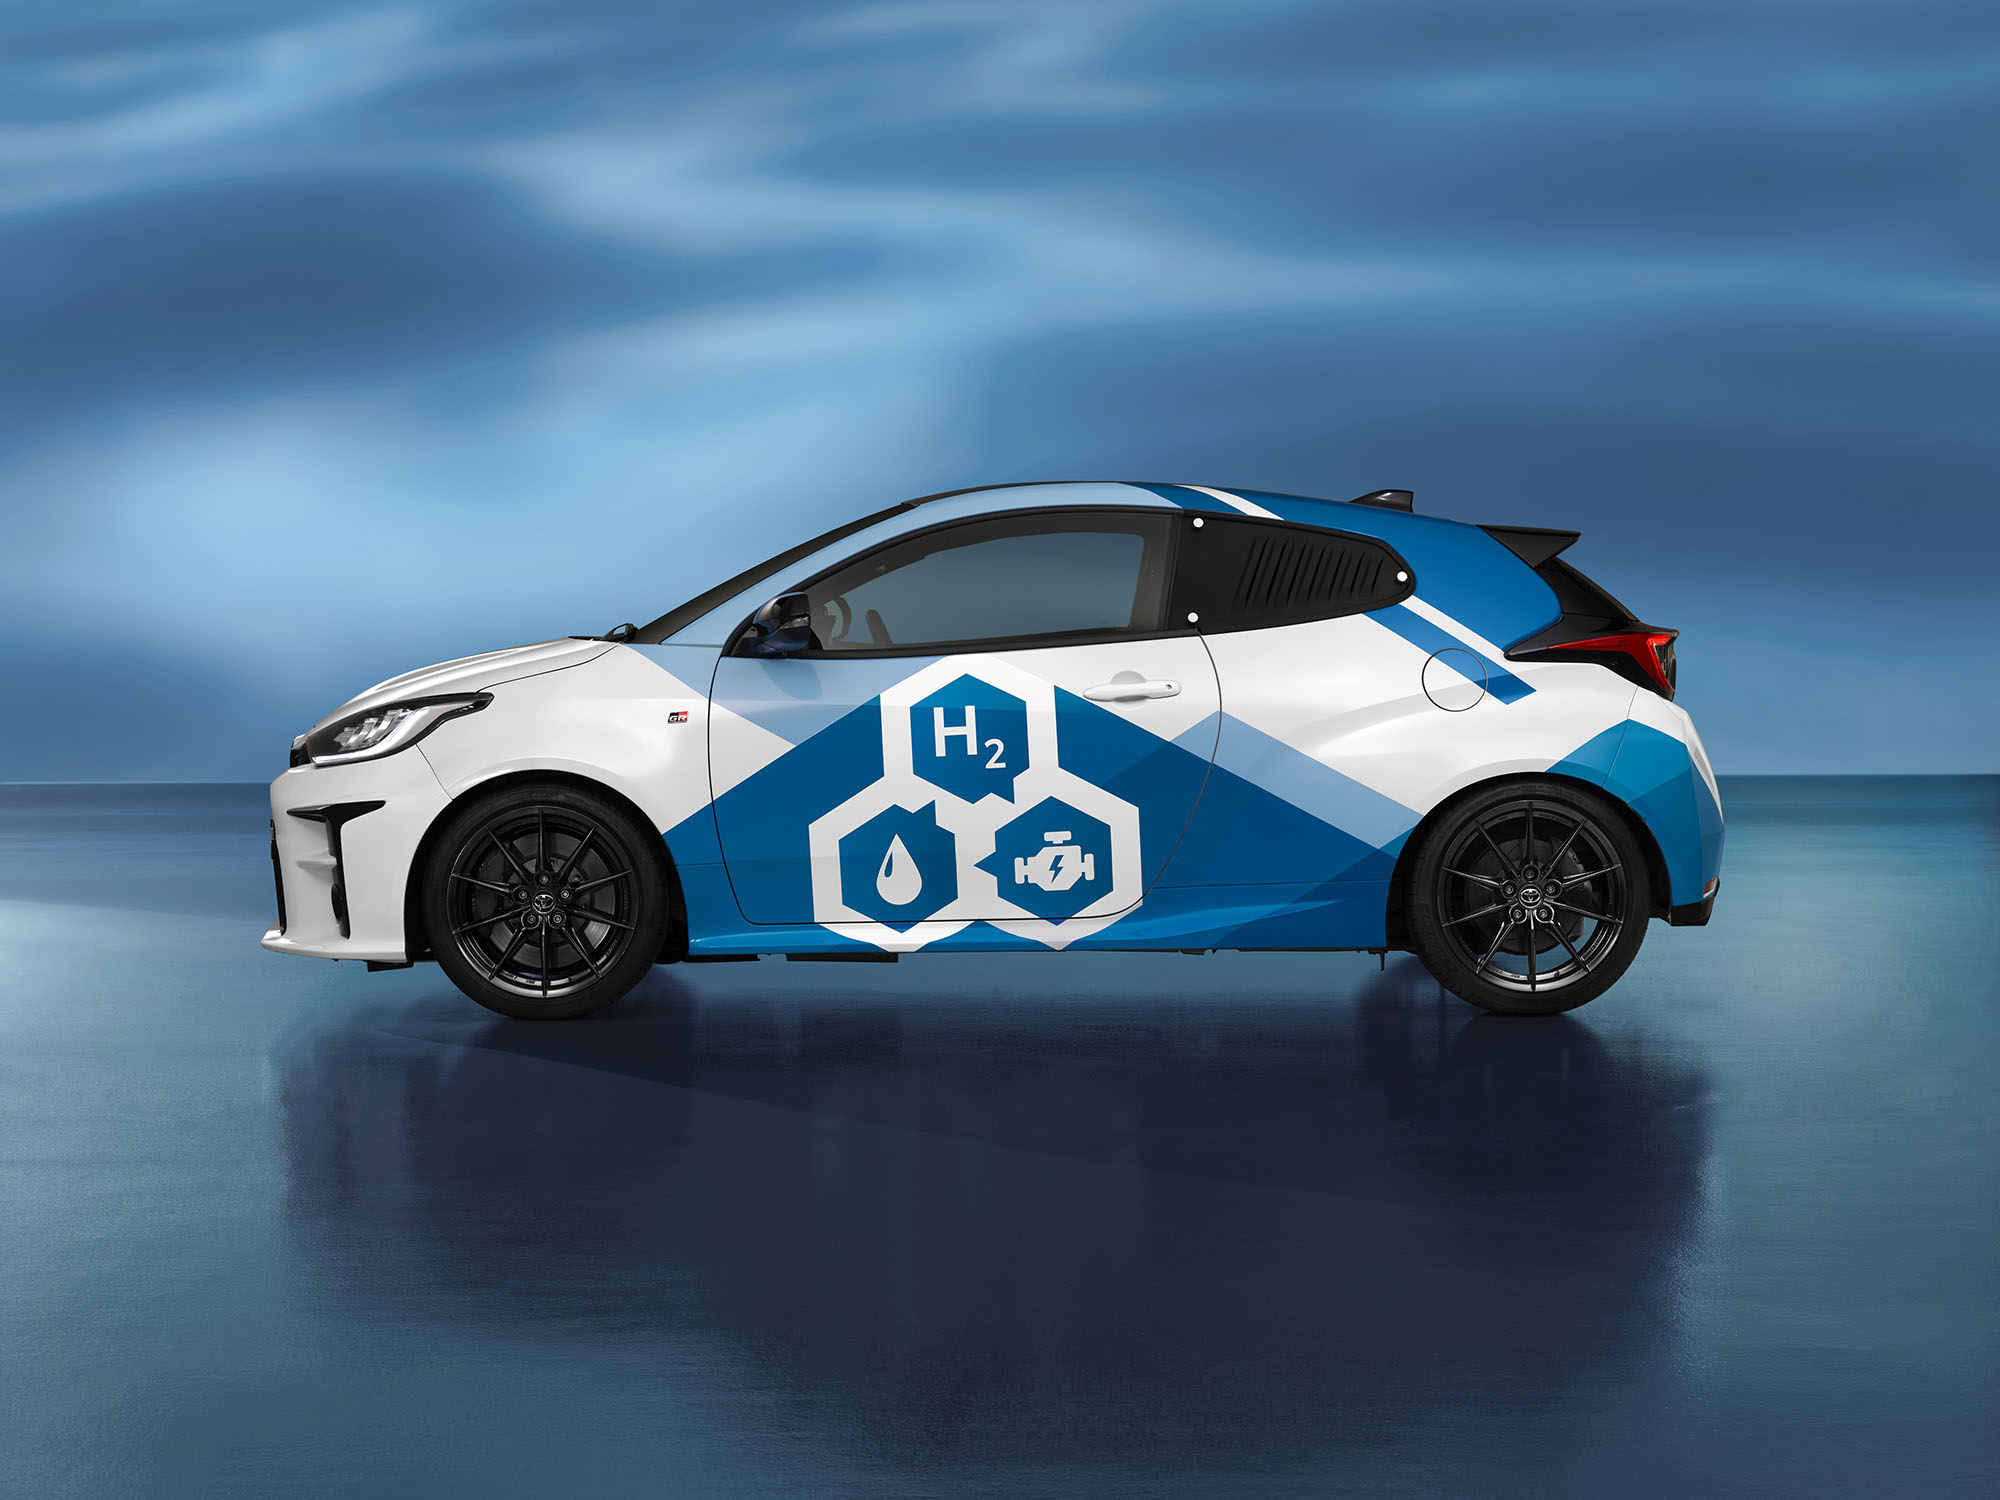 H Toyota θα συνεργαστεί με την Air Liquide, εταιρεία βιομηχανικών αερίων και τεχνολογίας με έδρα τη Γαλλία και την CaetanoBus, κατασκευαστή λεωφορείων και πλαισίων από την Πορτογαλία, για την επιτάχυνση της επέκτασης της κινητικότητας με υδρογόνο τόσο για ελαφρά όσο και για βαρέα οχήματα. Η τριάδα εταιρειών θα ασχοληθεί με ολόκληρη την αλυσίδα αξίας της κινητικότητας με υδρογόνο, από την παραγωγή υδρογόνου από ανανεώσιμες πηγές ή με χαμηλές εκπομπές διοξειδίου του άνθρακα, μέχρι την υποδομή ανεφοδιασμού. Η εστίαση θα δοθεί αρχικά στα αυτοκίνητα, τα λεωφορεία και τα ελαφρά φορτηγά οχήματα, αν και αναφέρεται ότι τα βαρέα φορτηγά με κινητήρα υδρογόνου θα αποτελέσουν μέρος των μελλοντικών σχεδίων ανάπτυξης. Η Toyota είναι η μία από τις δύο μάρκες που προσφέρει ένα όχημα με κινητήρα υδρογόνου στο Ηνωμένο Βασίλειο με το Mirai, ενώ το άλλο είναι το Nexo της Hyundai. Και τα δύο οχήματα χρησιμοποιούν αποθηκευμένο υδρογόνο για την παραγωγή ηλεκτρικής ενέργειας από την κυψέλη καυσίμου. Επί του παρόντος, υπάρχουν 14 σταθμοί ανεφοδιασμού υδρογόνου ανοιχτοί για το κοινό στο Ηνωμένο Βασίλειο. Ο Matt Harrison, πρόεδρος και διευθύνων σύμβουλος της Toyota Motor Europe, δήλωσε: «Είμαστε ενθουσιασμένοι από την ευκαιρία να συνδυάσουμε τις δυνάμεις μας για να επεκτείνουμε την ανάπτυξη των συστάδων υδρογόνου. Ο ρόλος της Toyota είναι να φέρει τις εφαρμογές του υδρογόνου στο οικοσύστημα και, συνεργαζόμενοι με τους εταίρους μας, θέλουμε να επιταχύνουμε και να εντείνουμε τη χρήση του υδρογόνου ως λύση για την κινητικότητα με ουδέτερο ισοζύγιο άνθρακα».